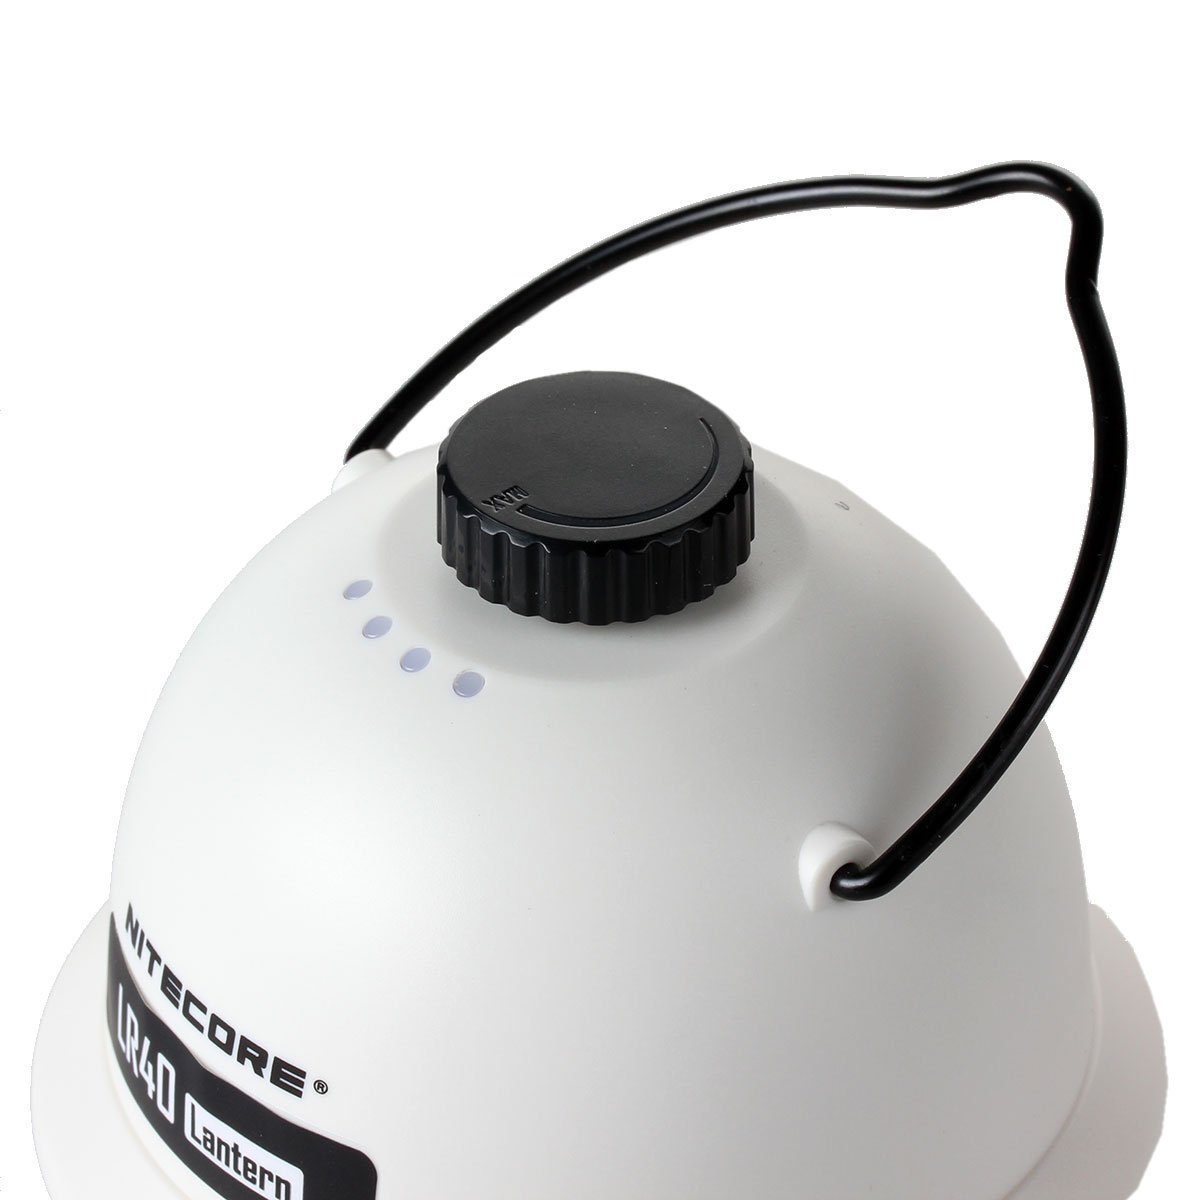 weiß Powerbank-Funktion Taschenlampe LED Nitecore LR40 mit Campingleuchte